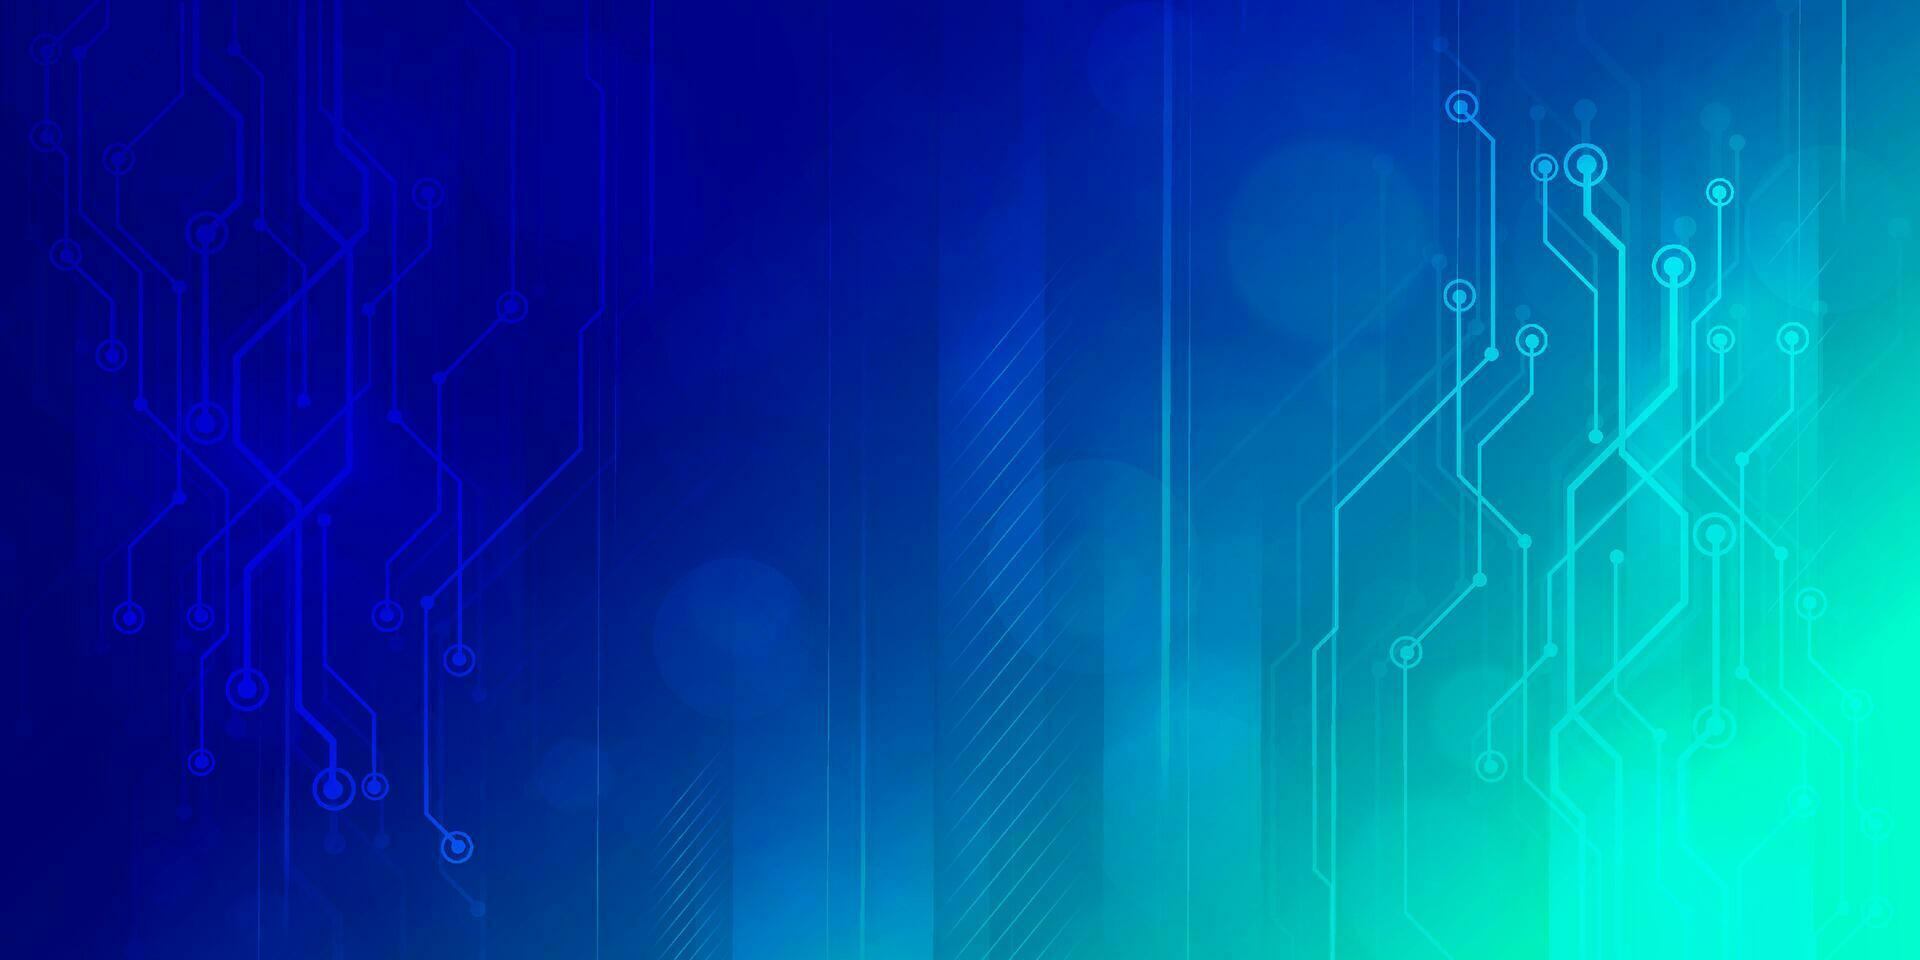 Digital Technologie Geschwindigkeit verbinden Blau Grün Hintergrund, Cyber Nano Information, abstrakt Kommunikation, Innovation Zukunft Technik Daten, Internet Netzwerk Verbindung, ai groß Daten, Linie Punkt Illustration vektor